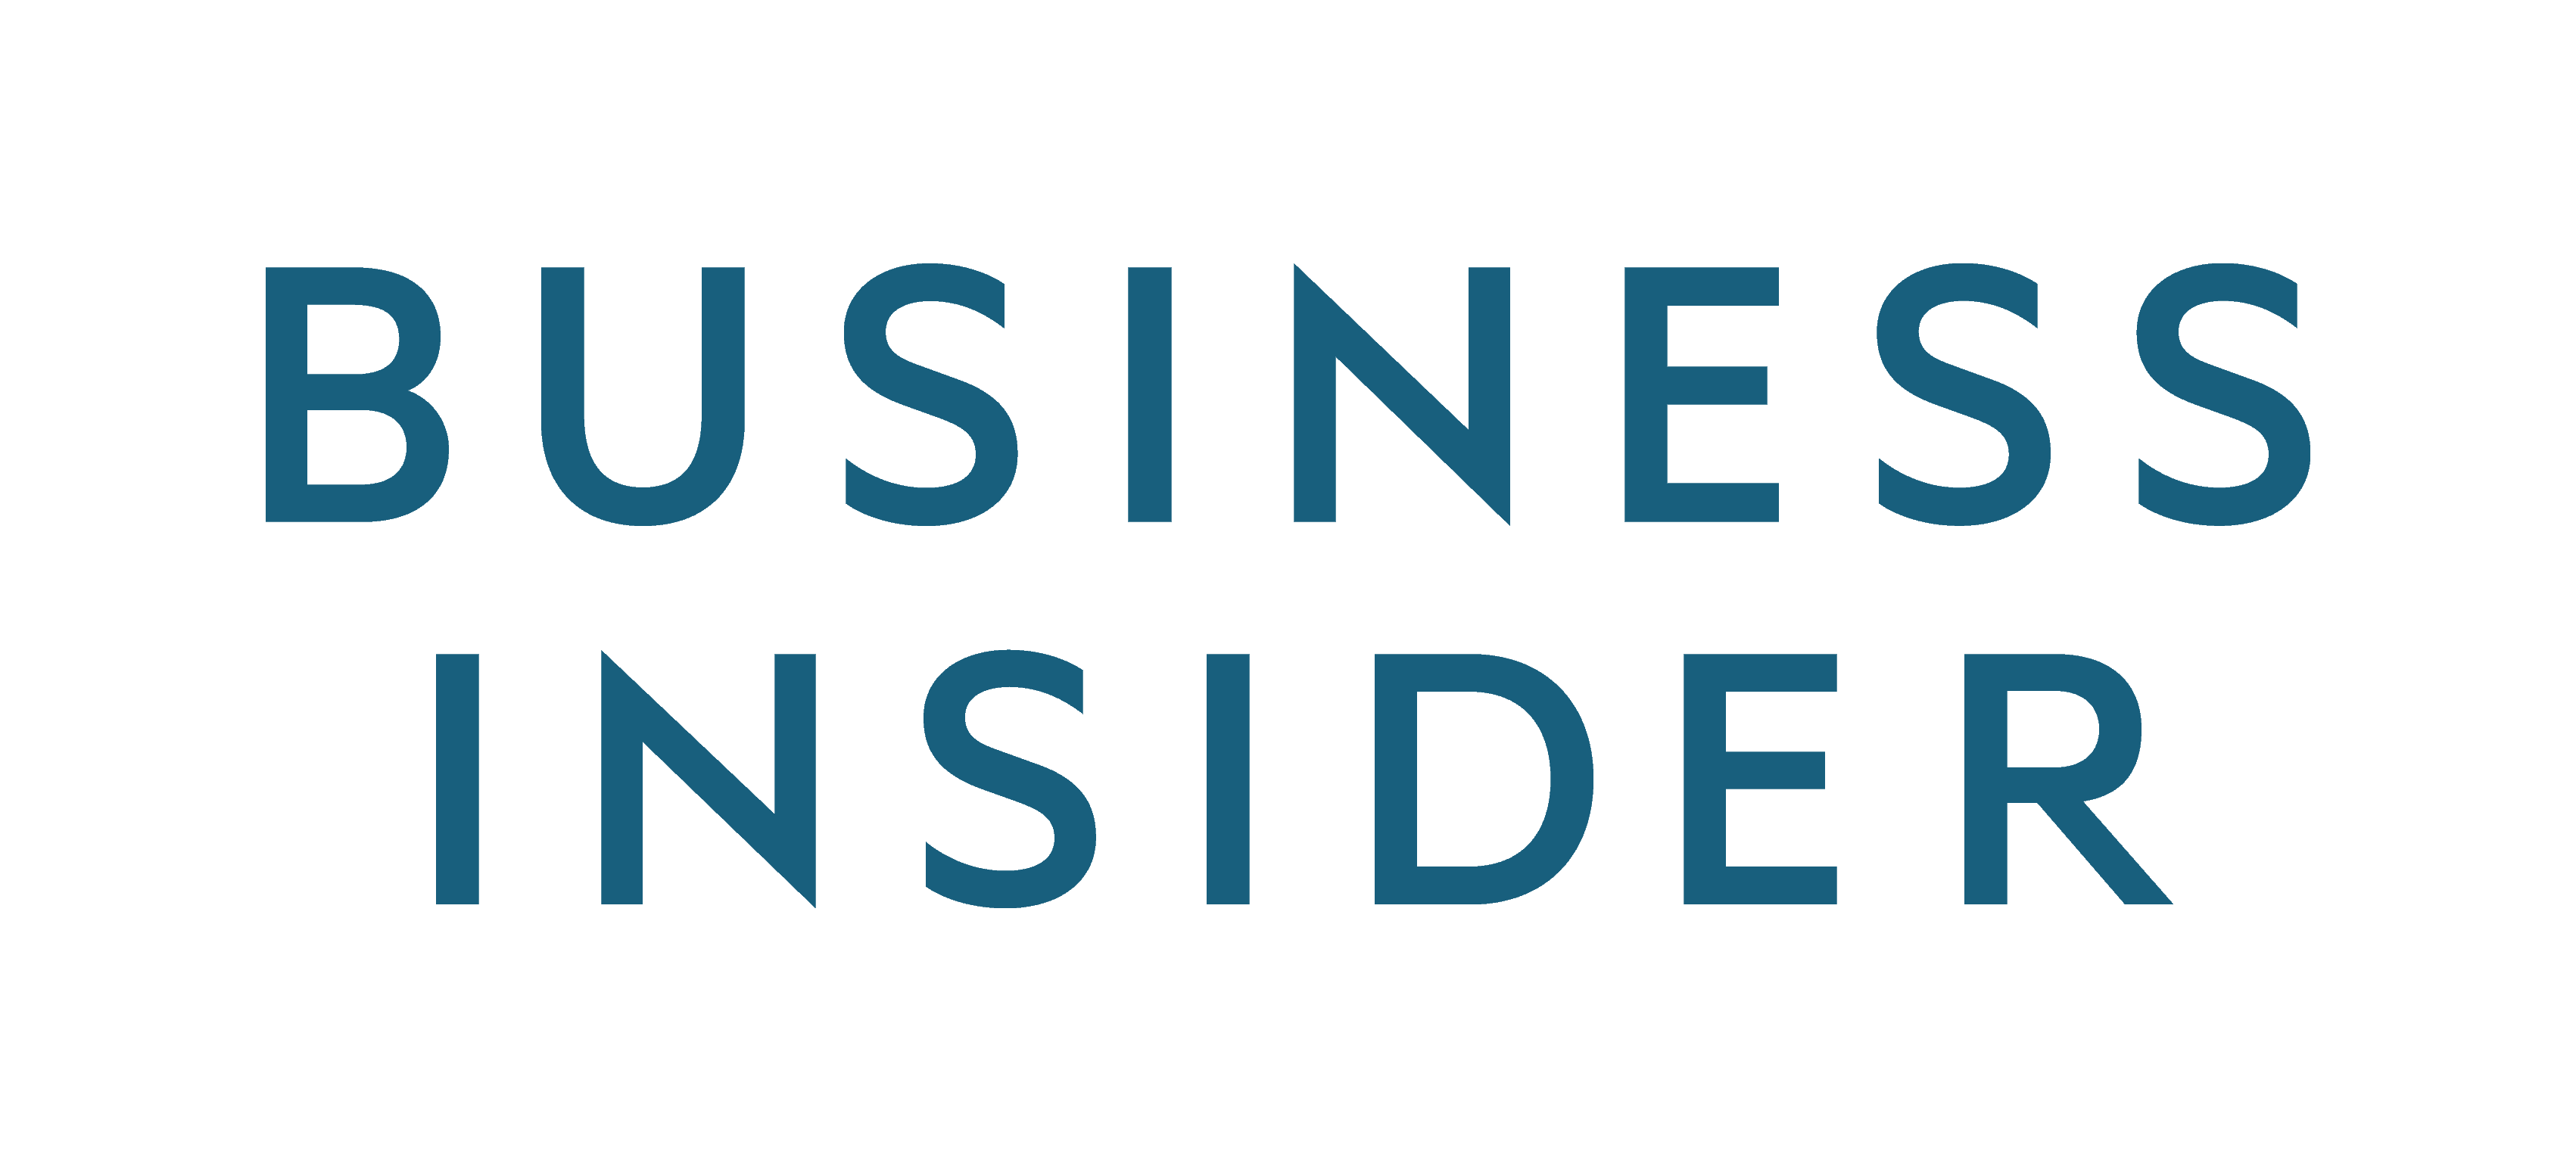 Logo for Business Insider